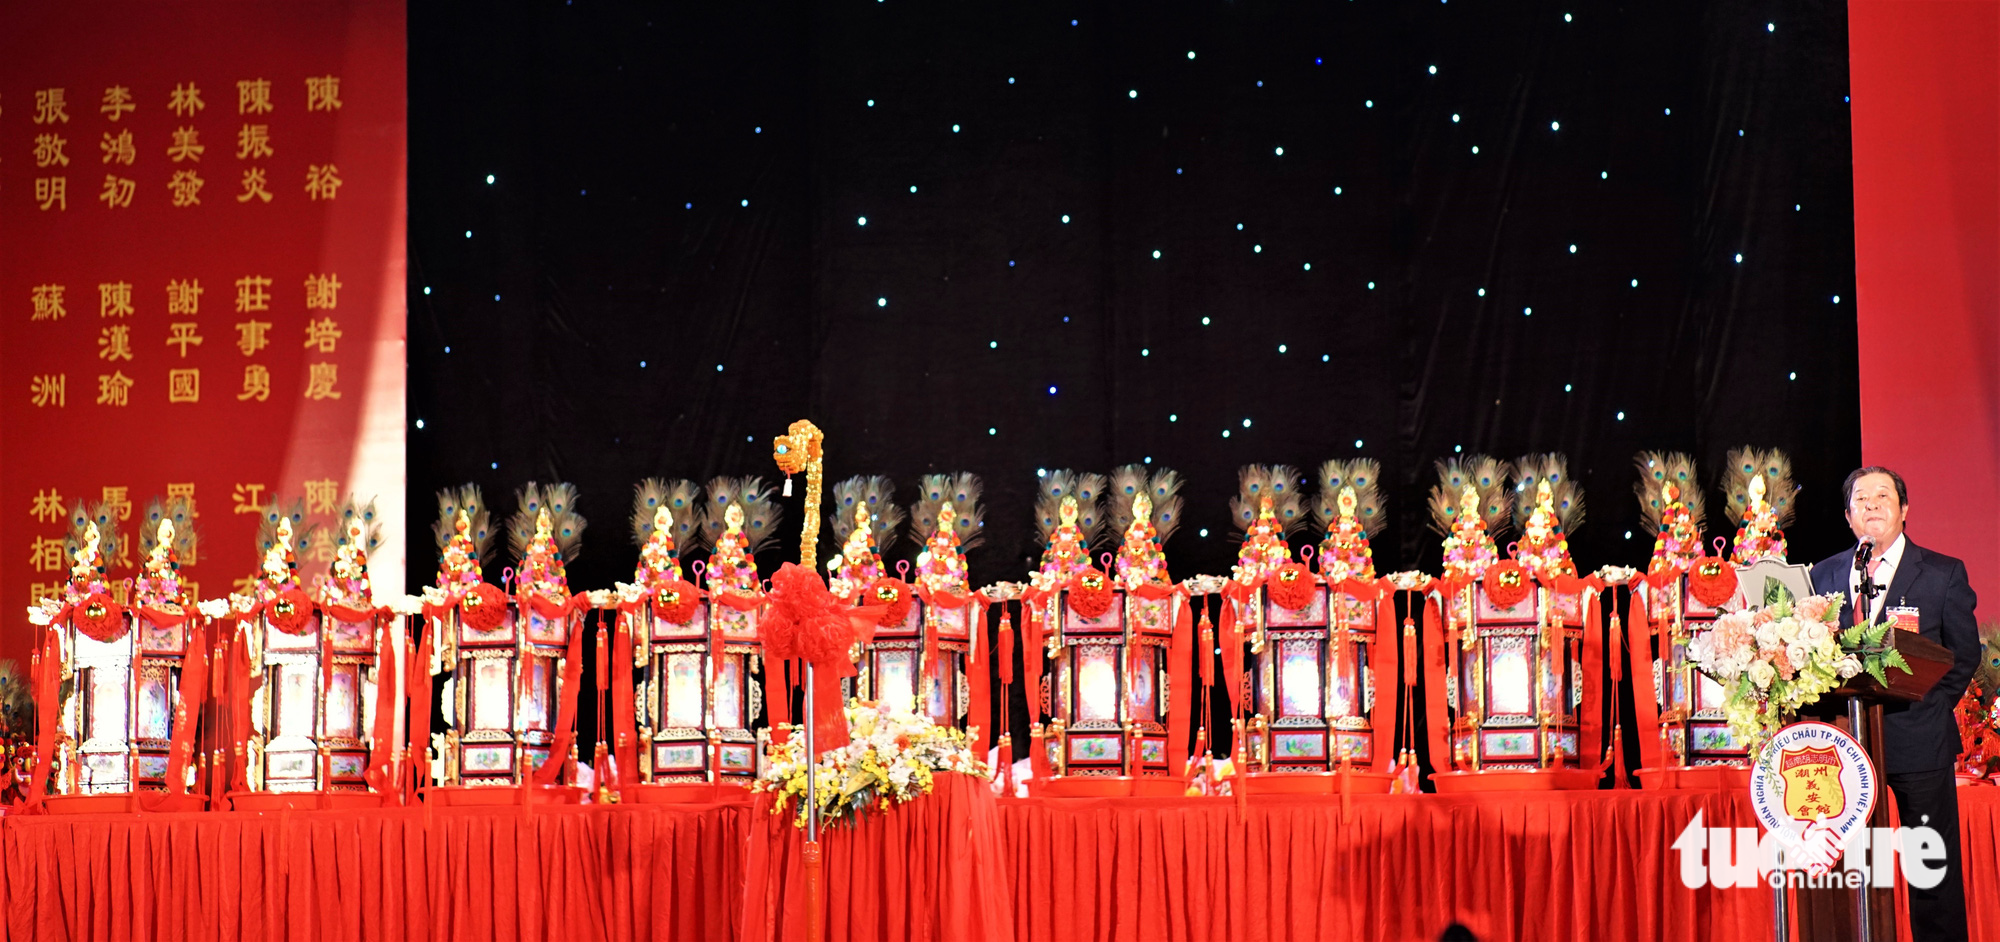 Đấu thỉnh đèn lộc của người Hoa ở TP.HCM góp thêm sinh khí mùa lễ hội - Ảnh 2.